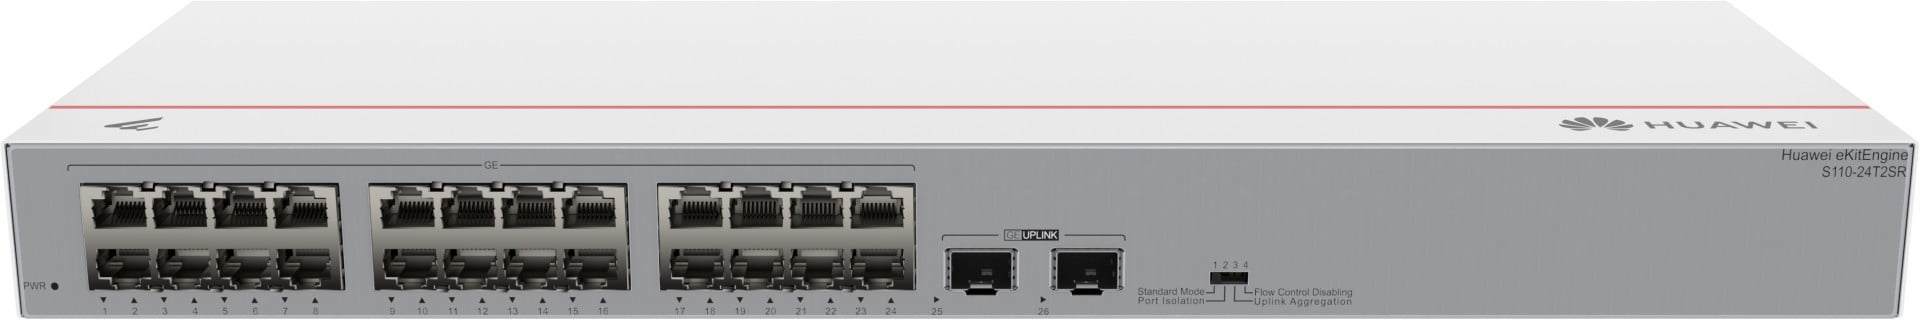 Huawei S110-24T2SR(98012196),24 port gigabit switch with 2x SFP+ 10GB uplink.